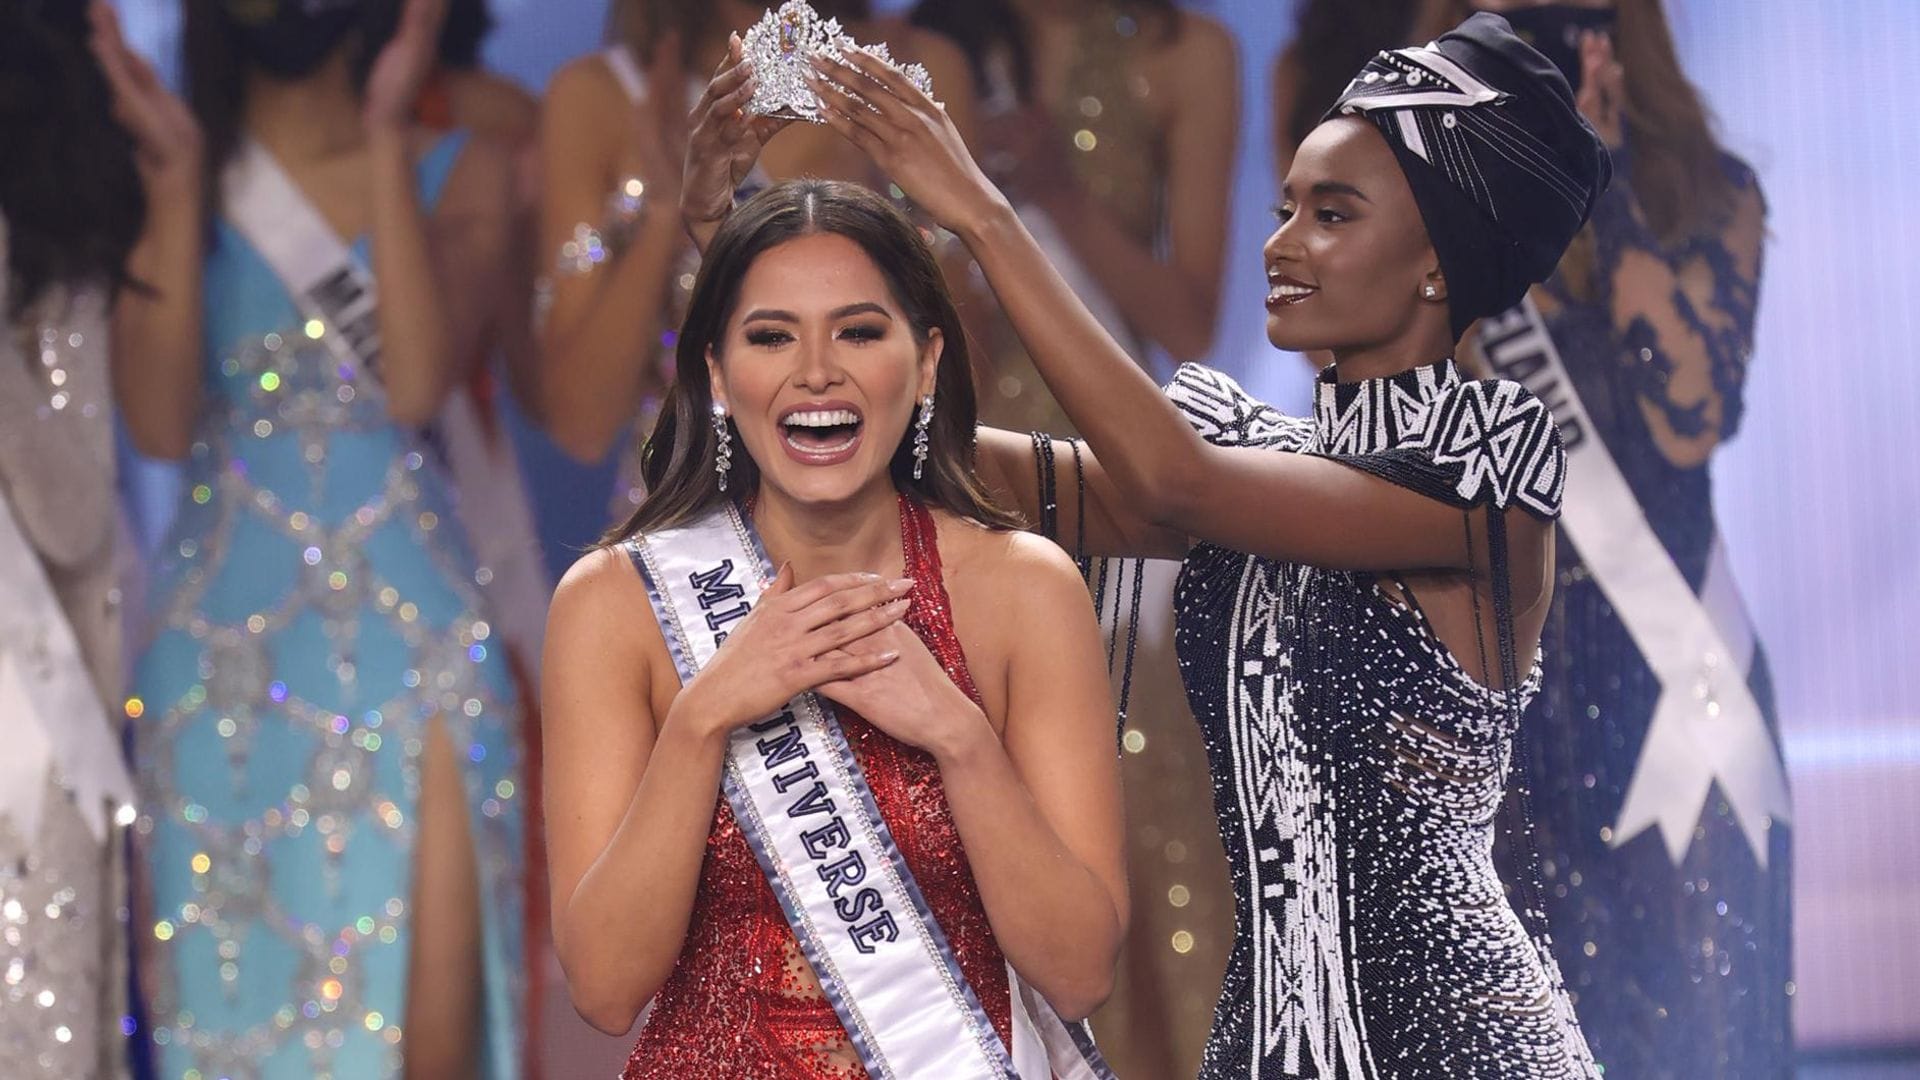 Andrea Meza, Miss Universo 2020, comparte su recuerdo favorito de todo lo que vivió en el certamen